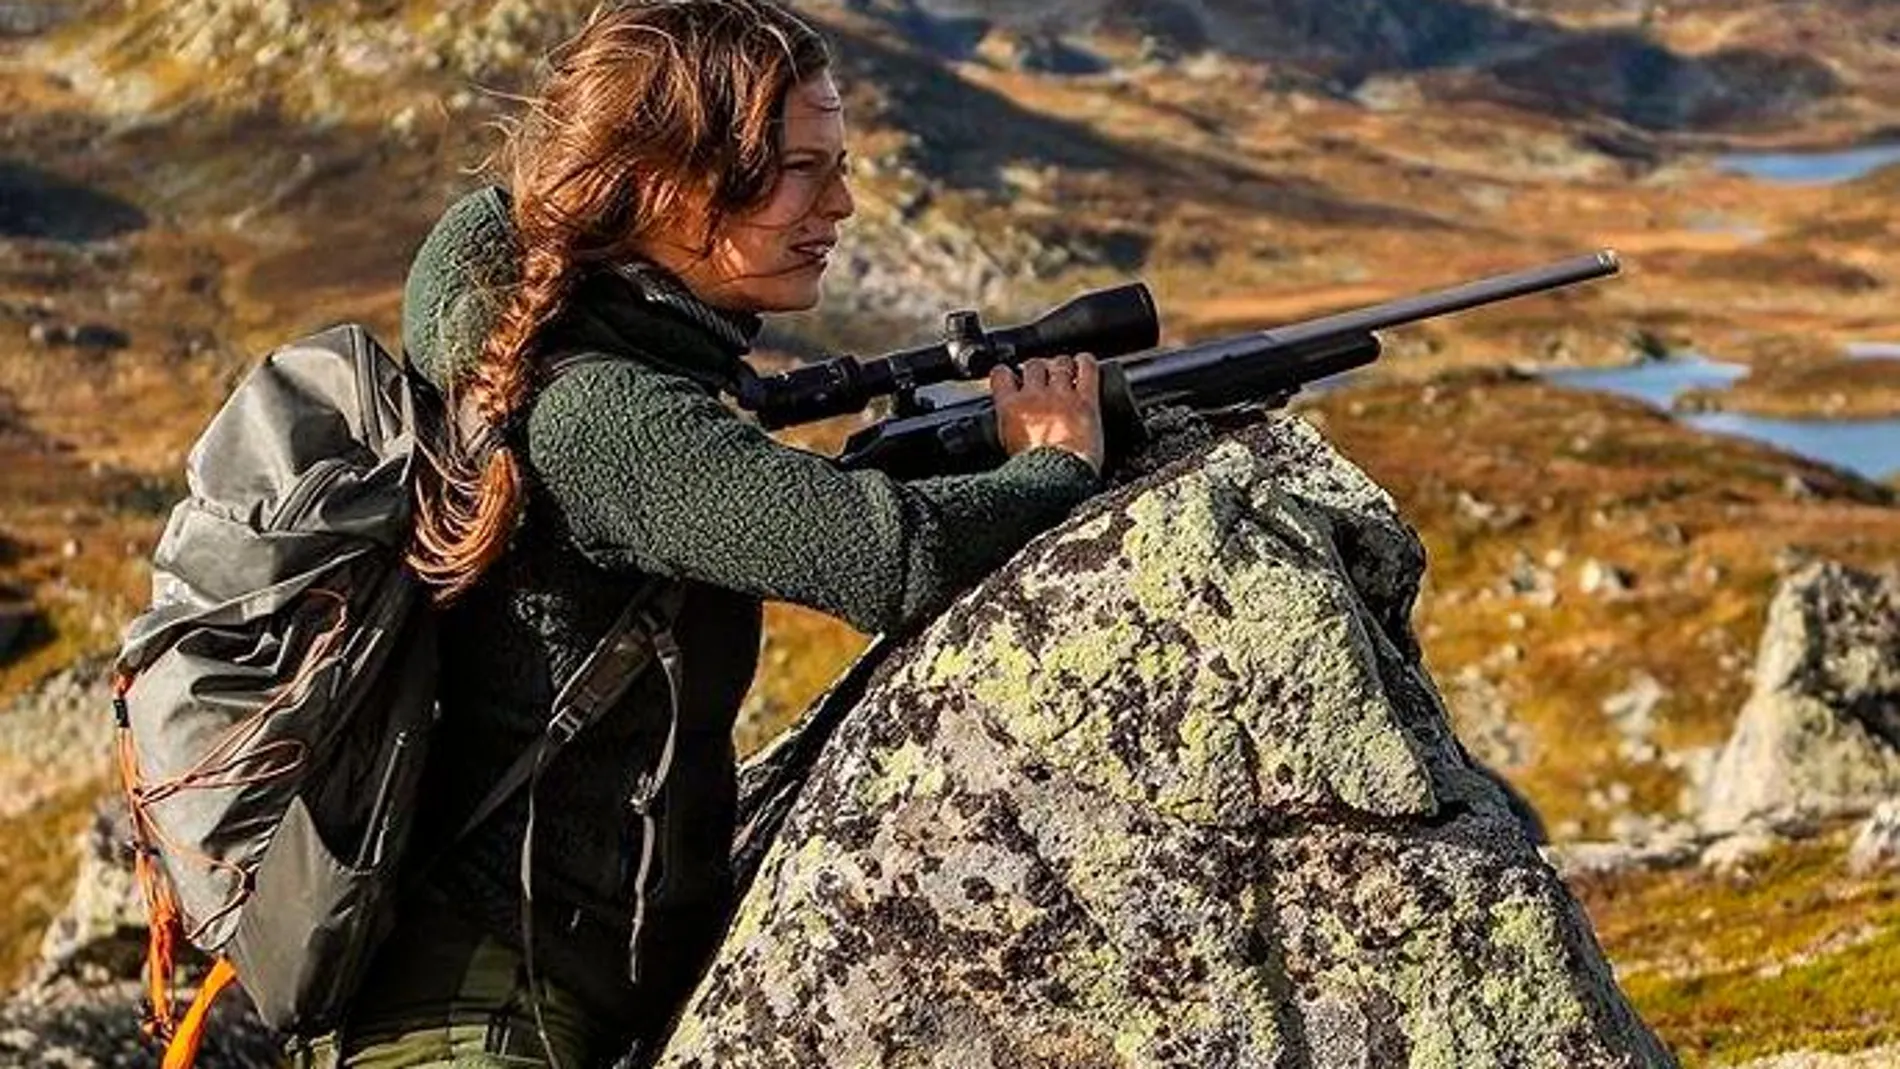 Marijke Ottema durante una jornada de caza